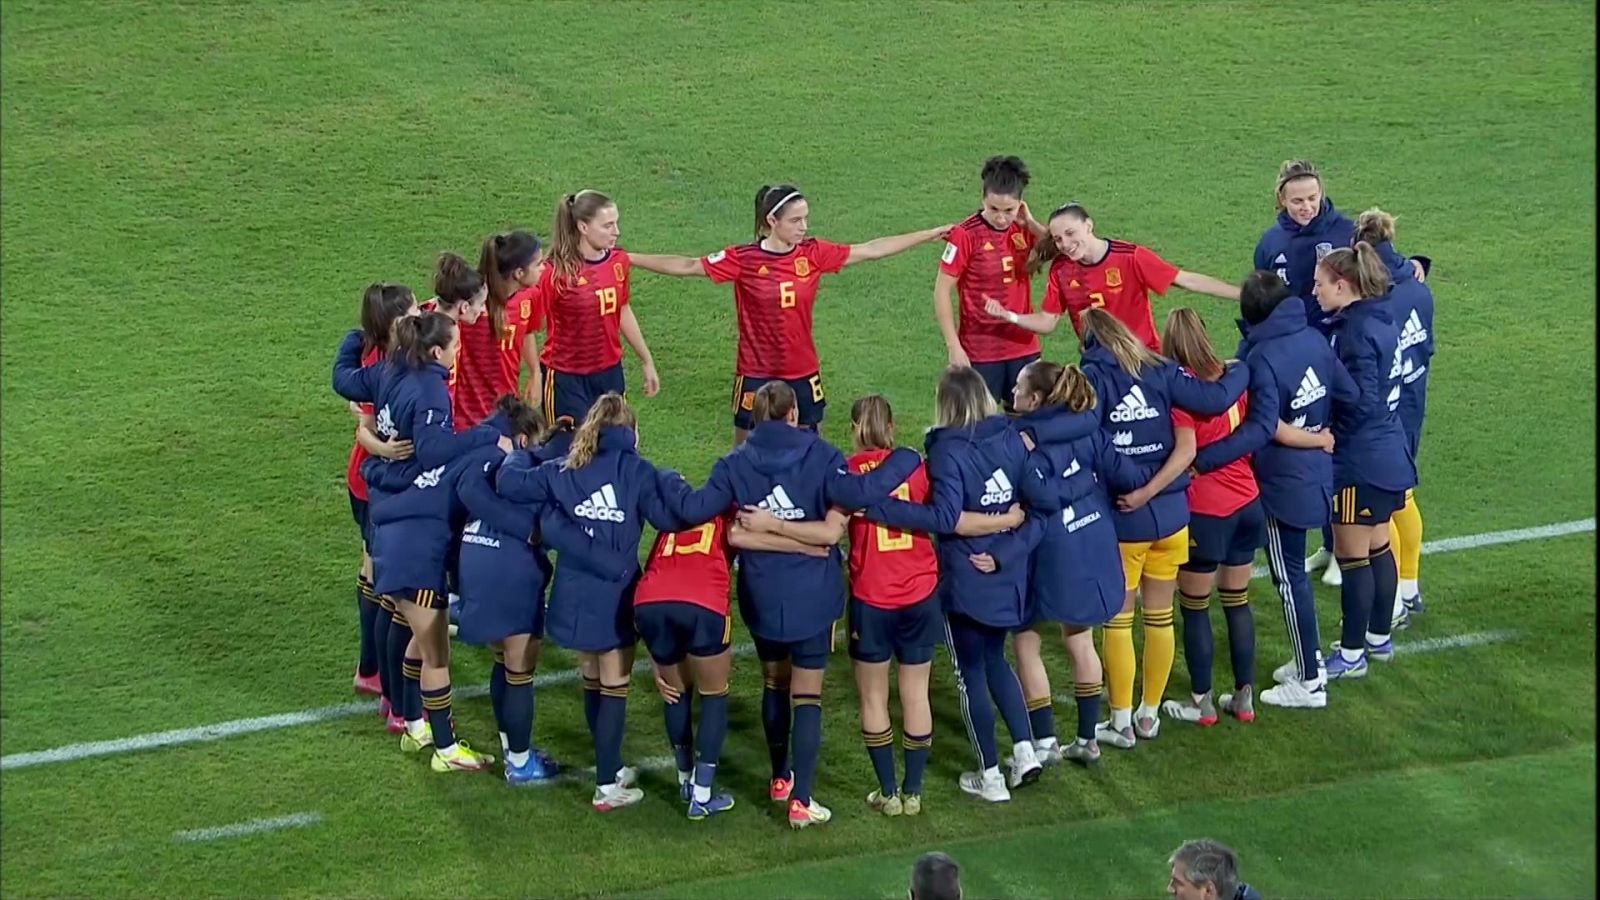 Fútbol femenino: España-Islas Feroe